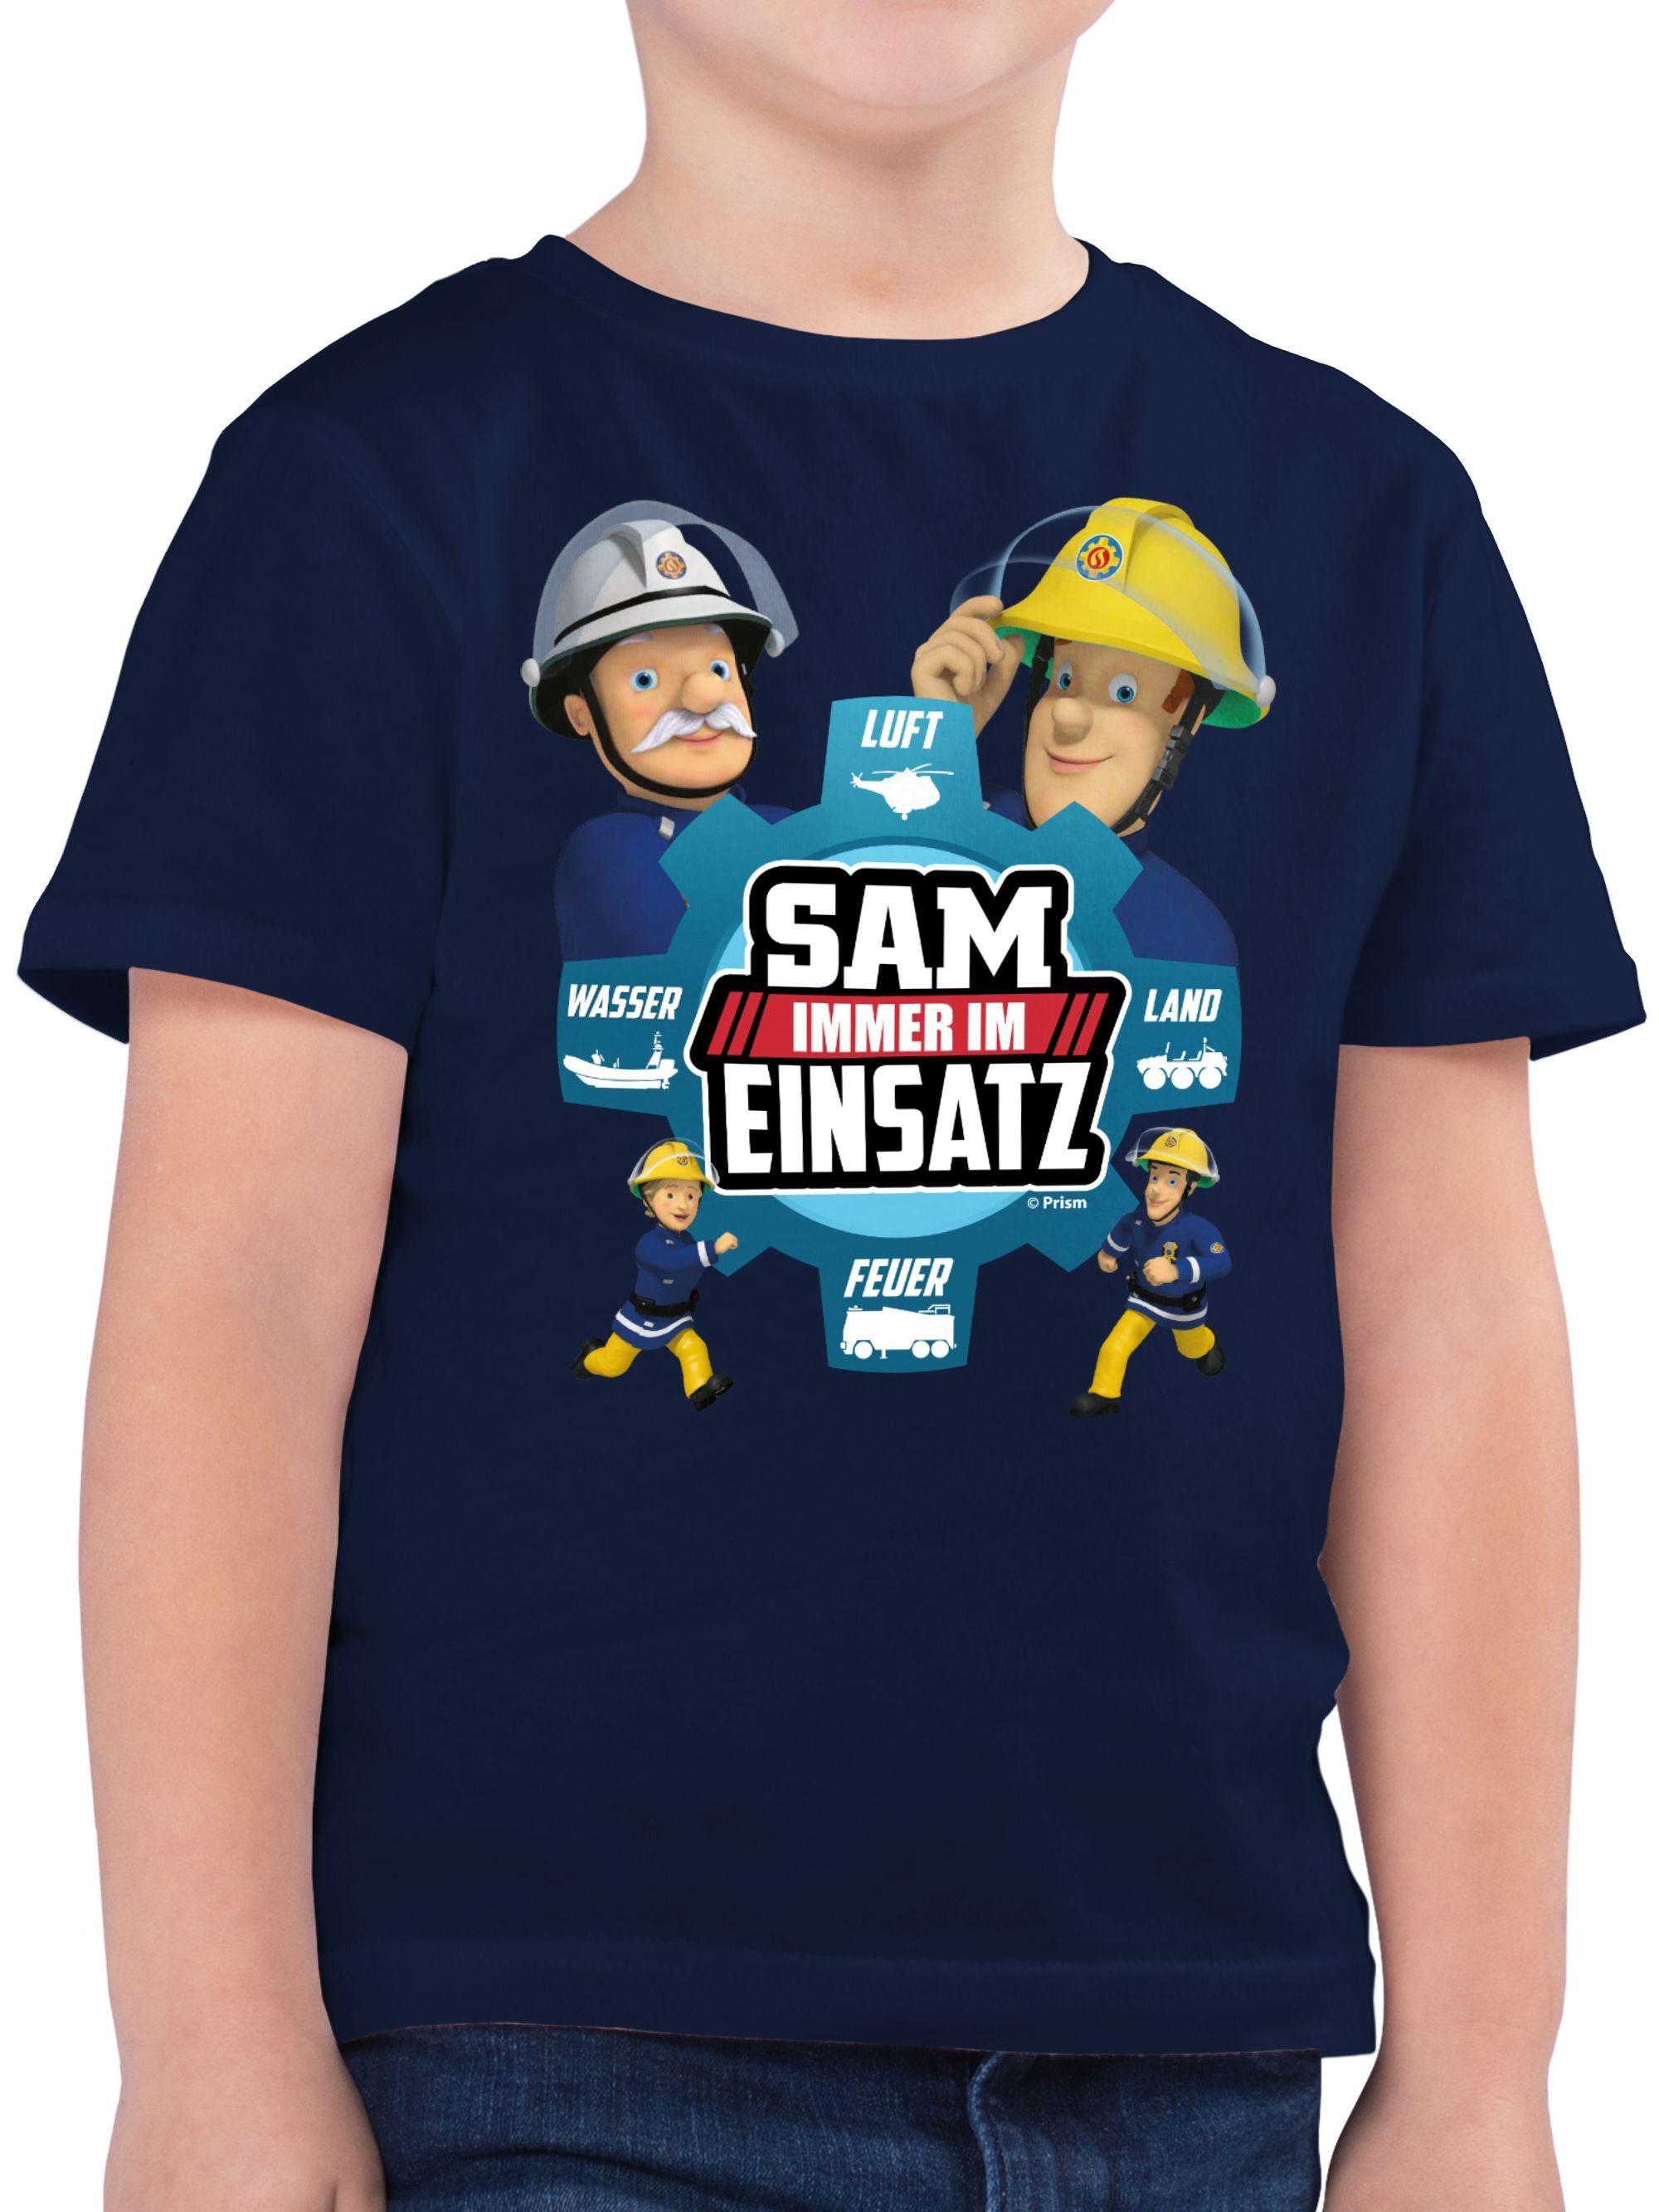 Shirtracer T-Shirt Sam Einsatz 02 Feuerwehrmann Jungen Sam im Immer Dunkelblau 